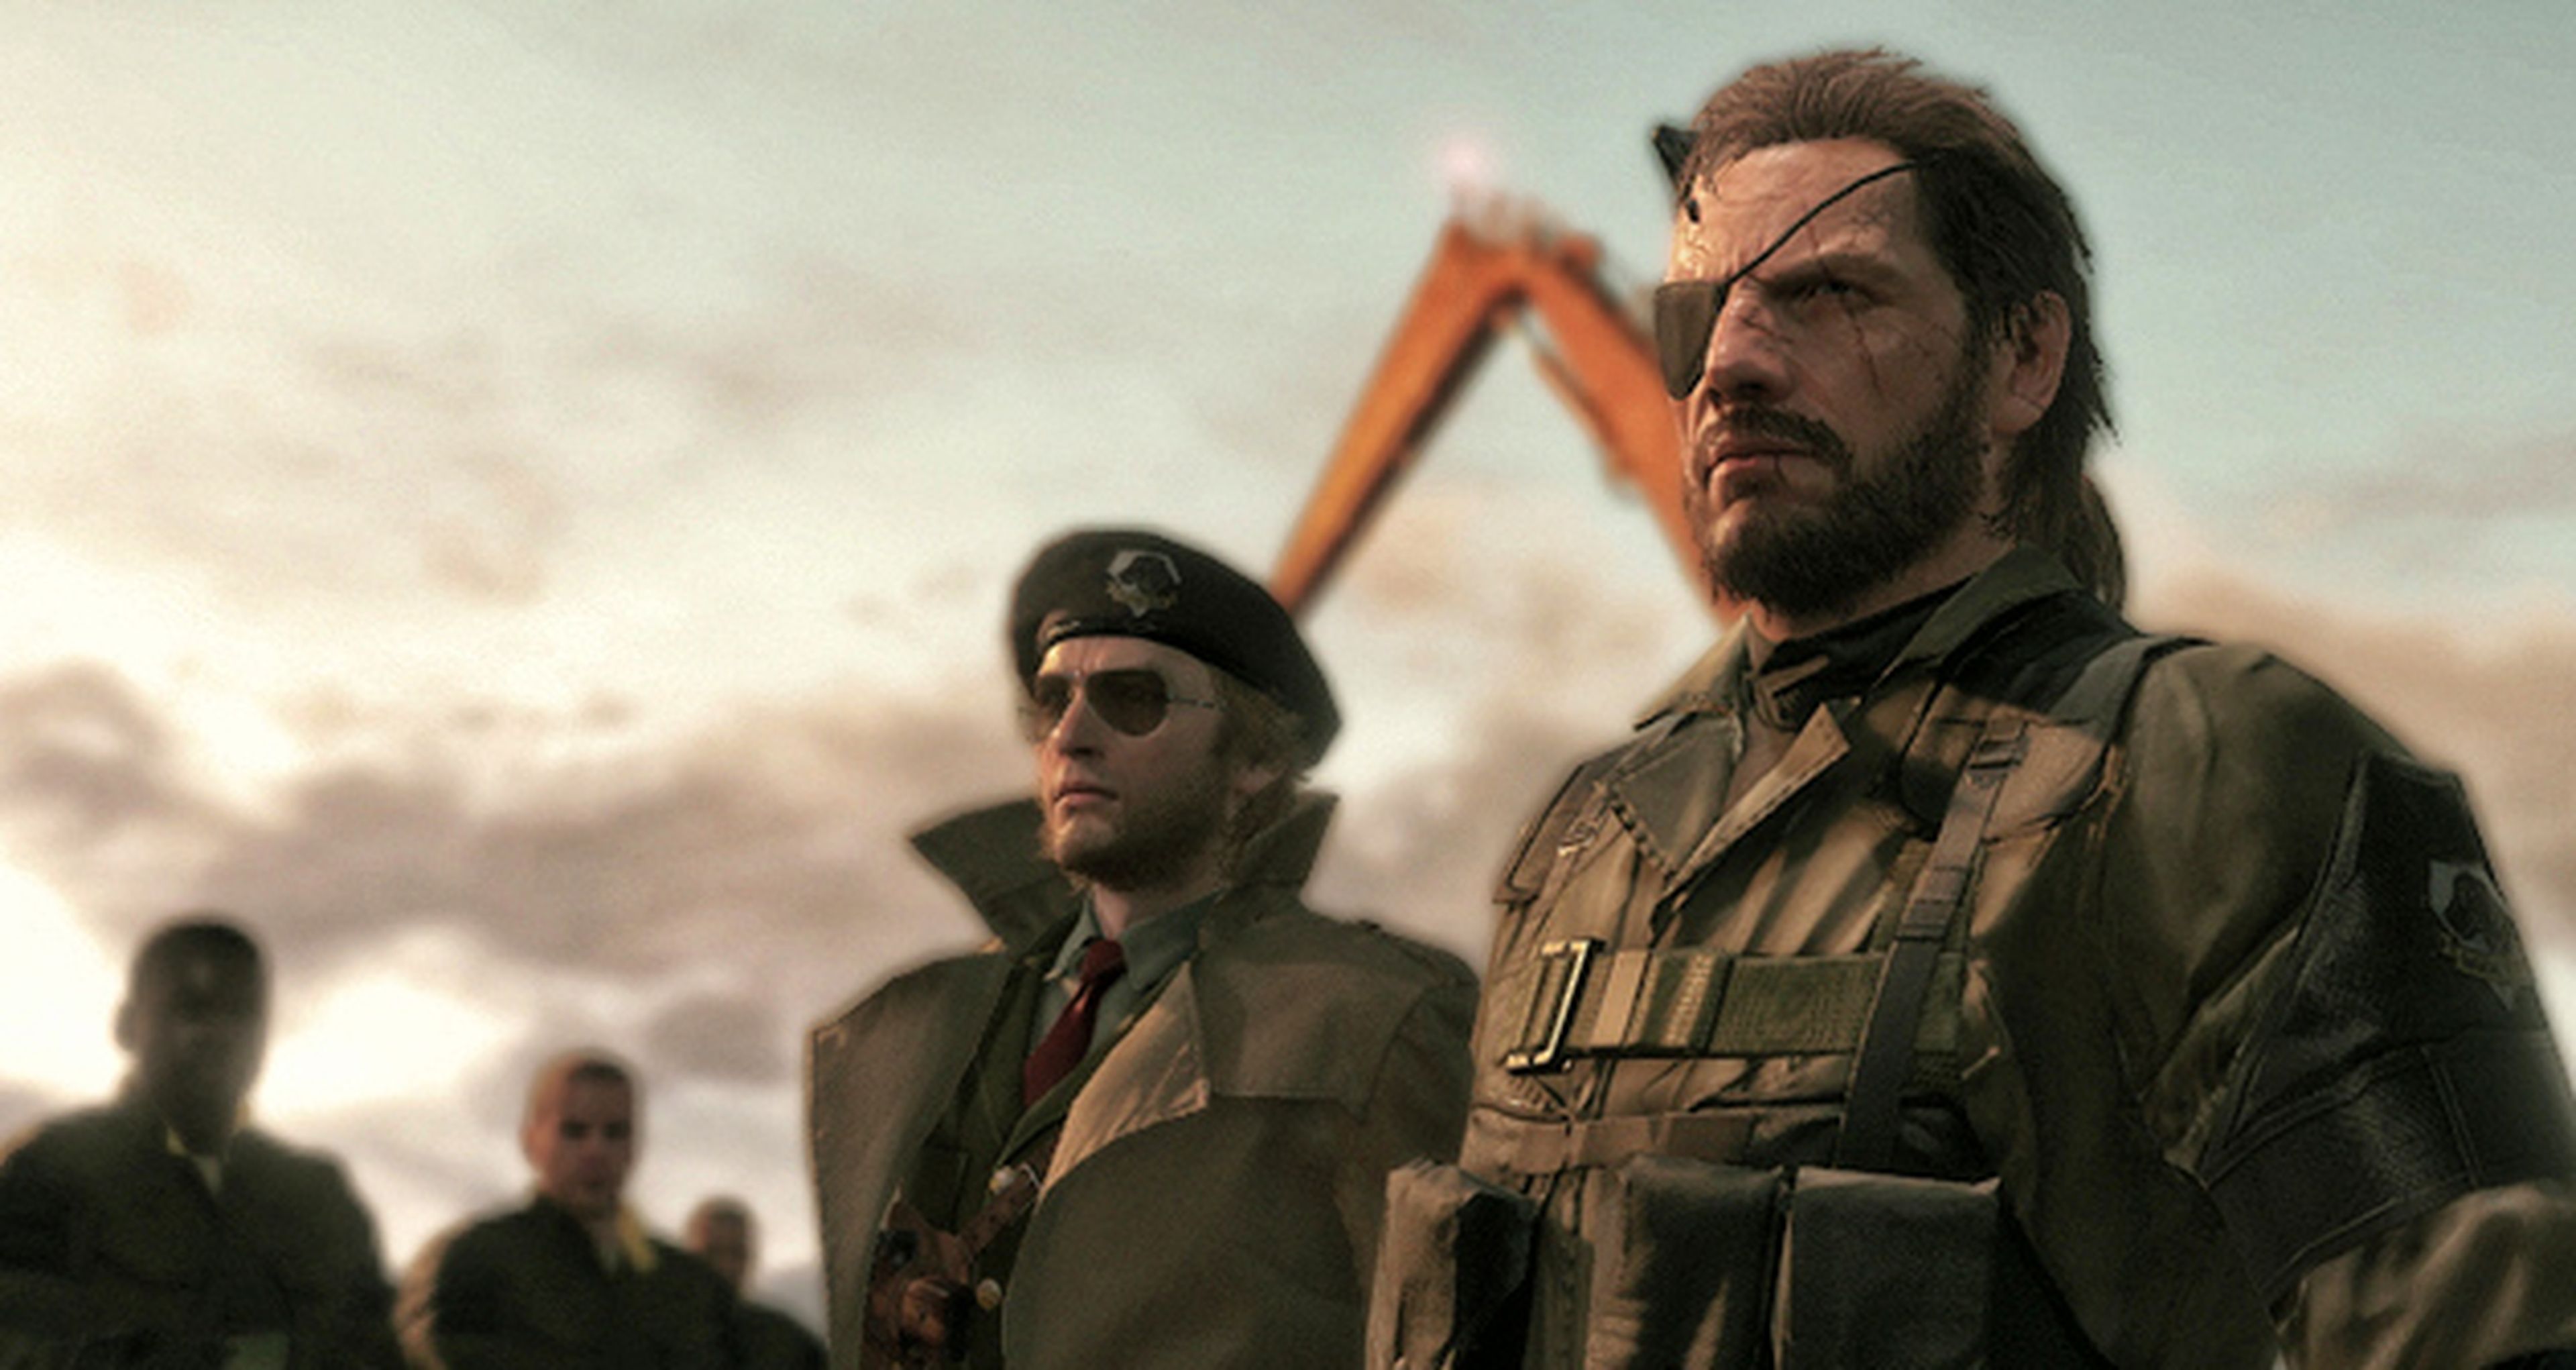 Metal Gear Solid 5 The Phantom Pain: ¿Lanzamiento en febrero de 2015?